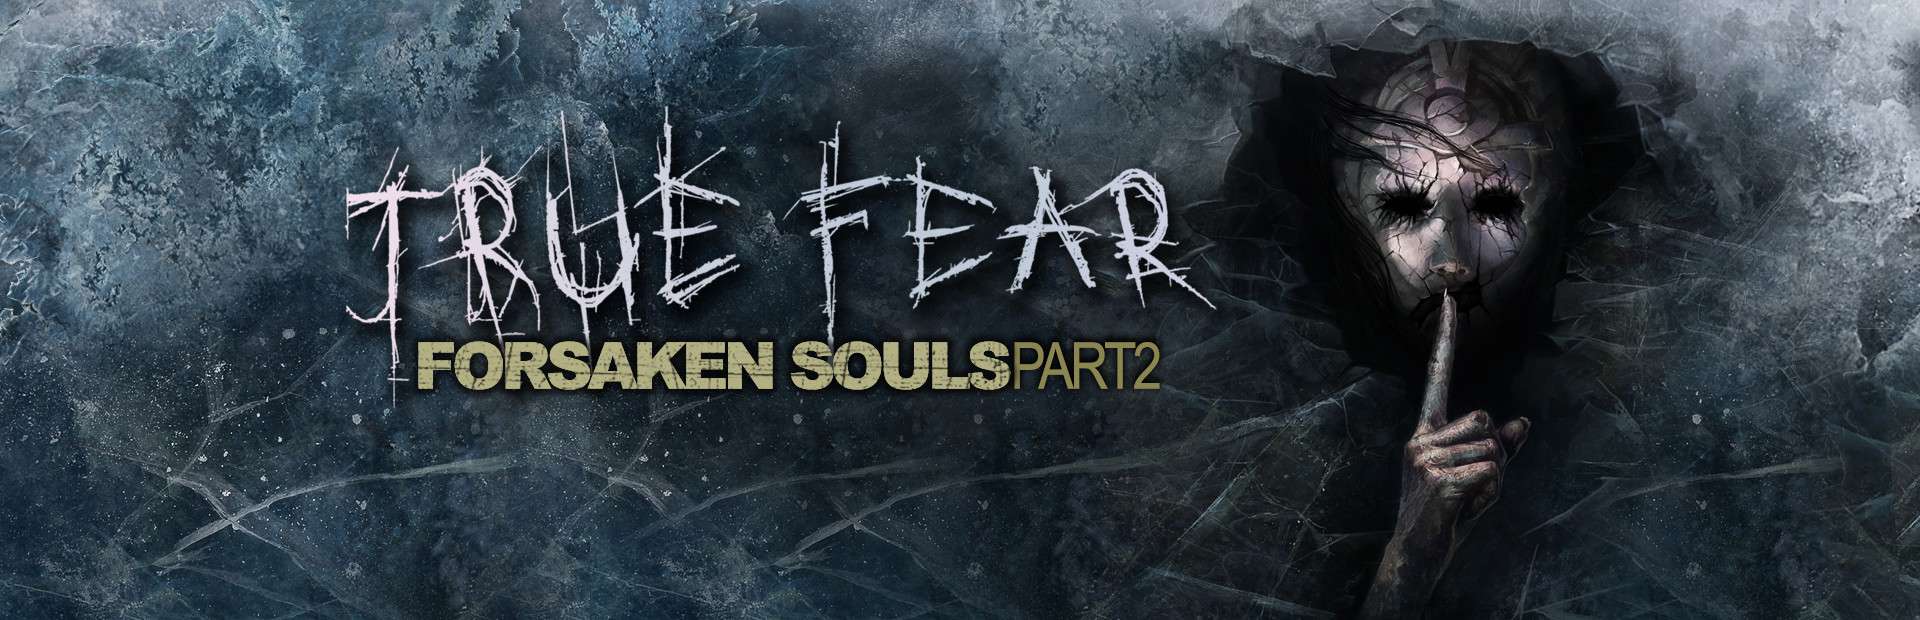 True Fear: Forsaken Souls Part 2 cover image